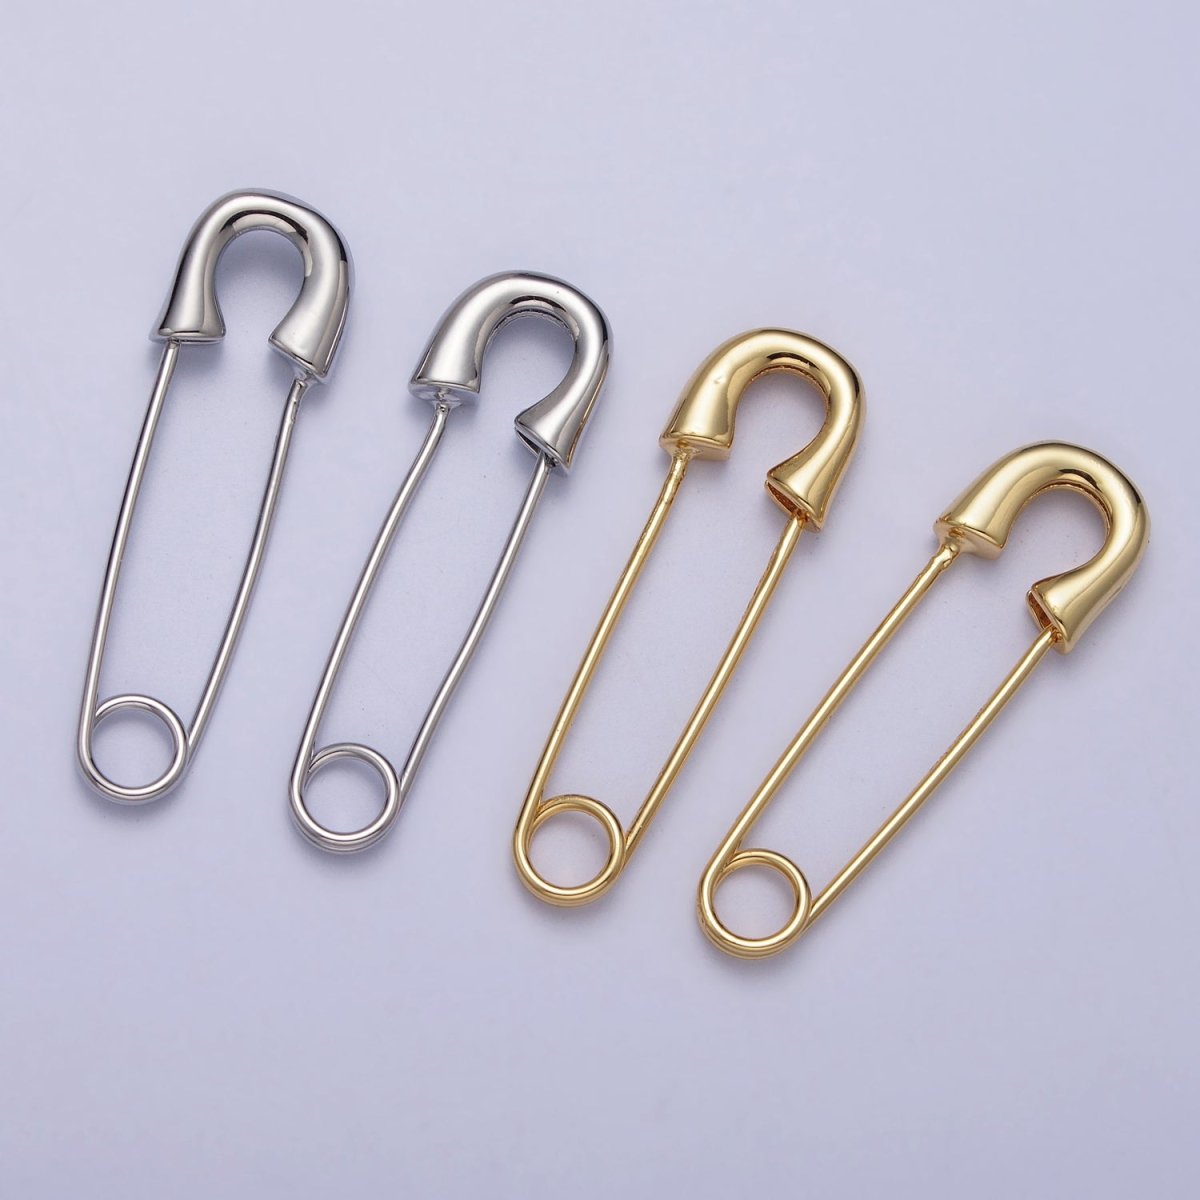 Gold Safety Pin Earrings Silver Safety Pin Earrings Modern Geometric Earrings Minimalist Look | AC115 AC116 - DLUXCA